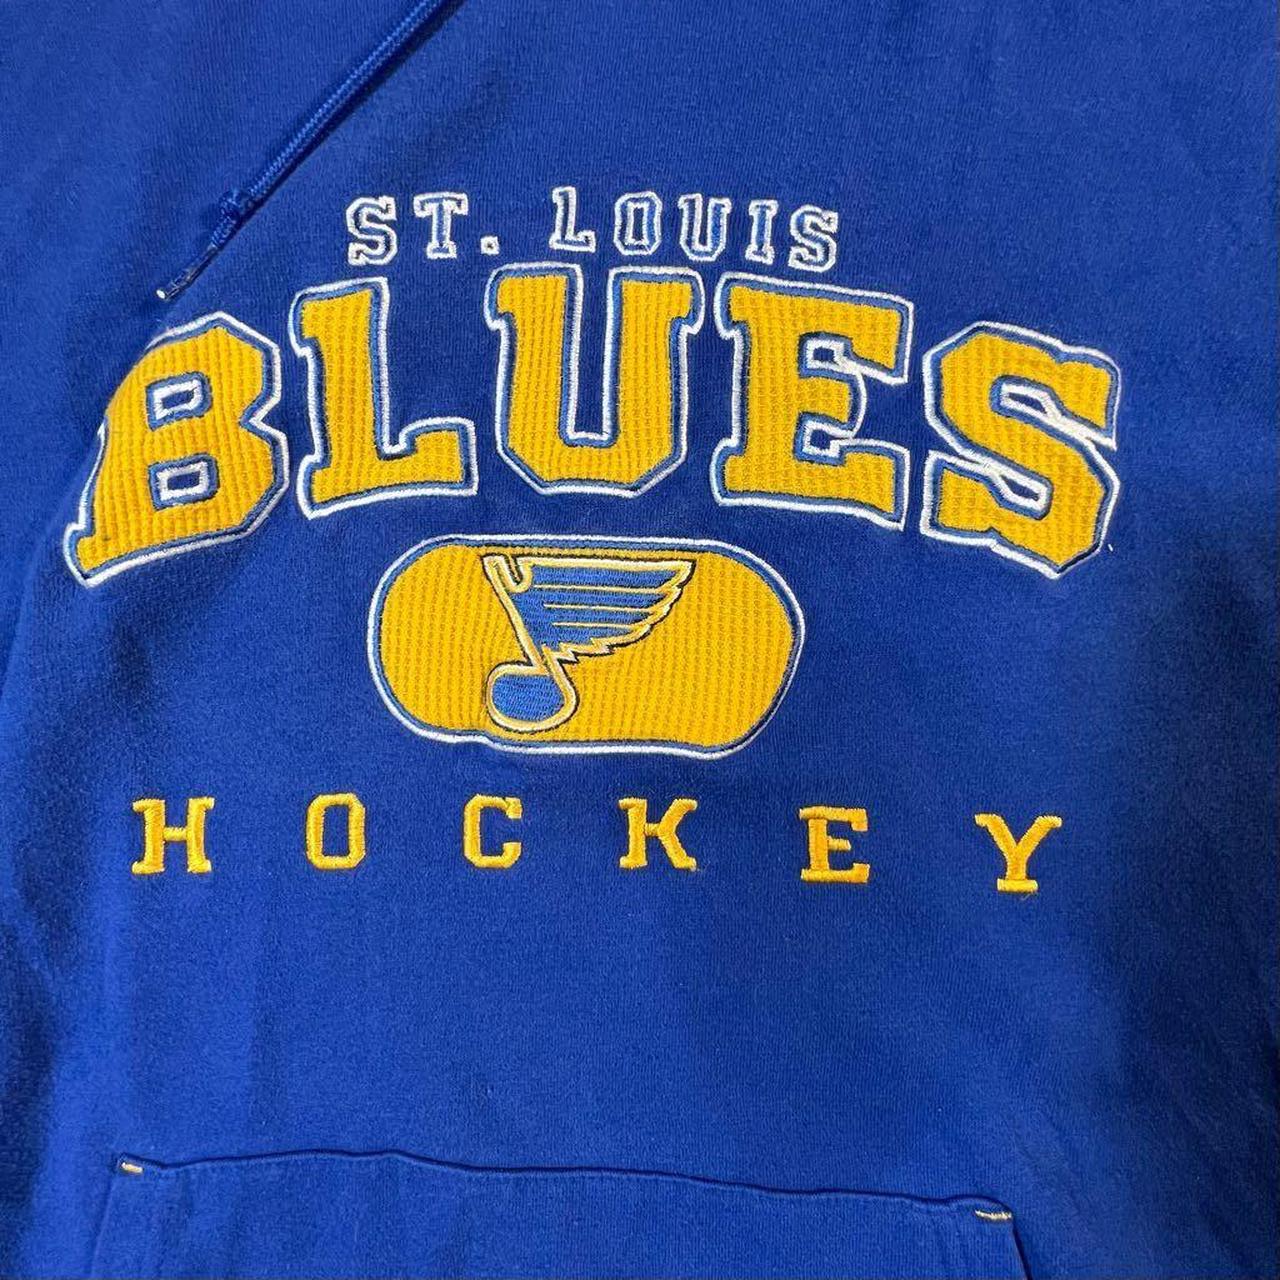 Reebok St. Louis Blues Hockey Hoodie Men's Size: - Depop